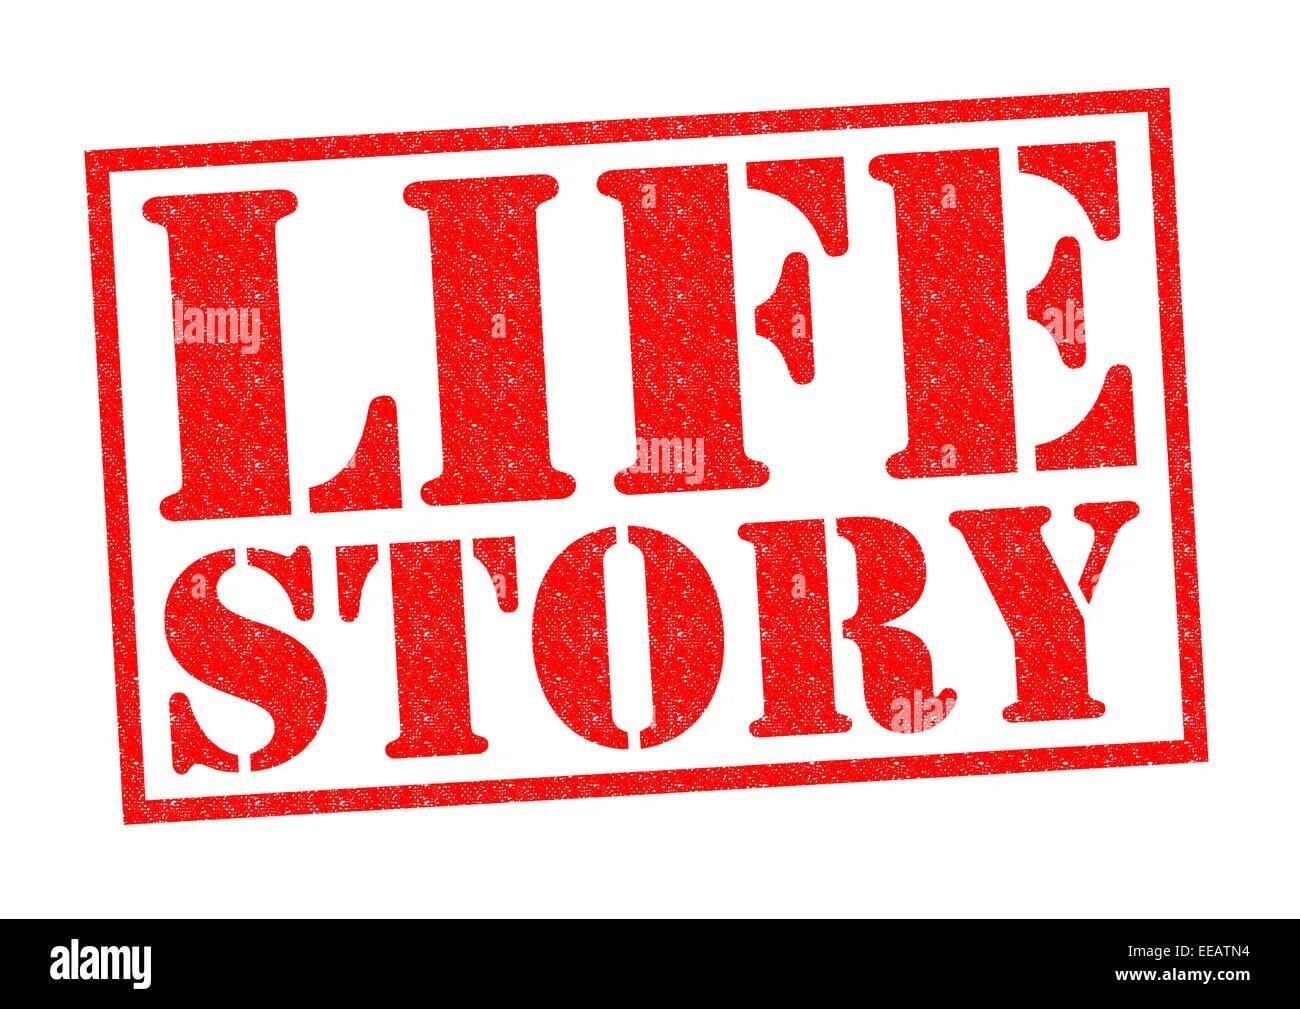 True life story. Life story. History of Life. Life History логотип. The story of my Life.